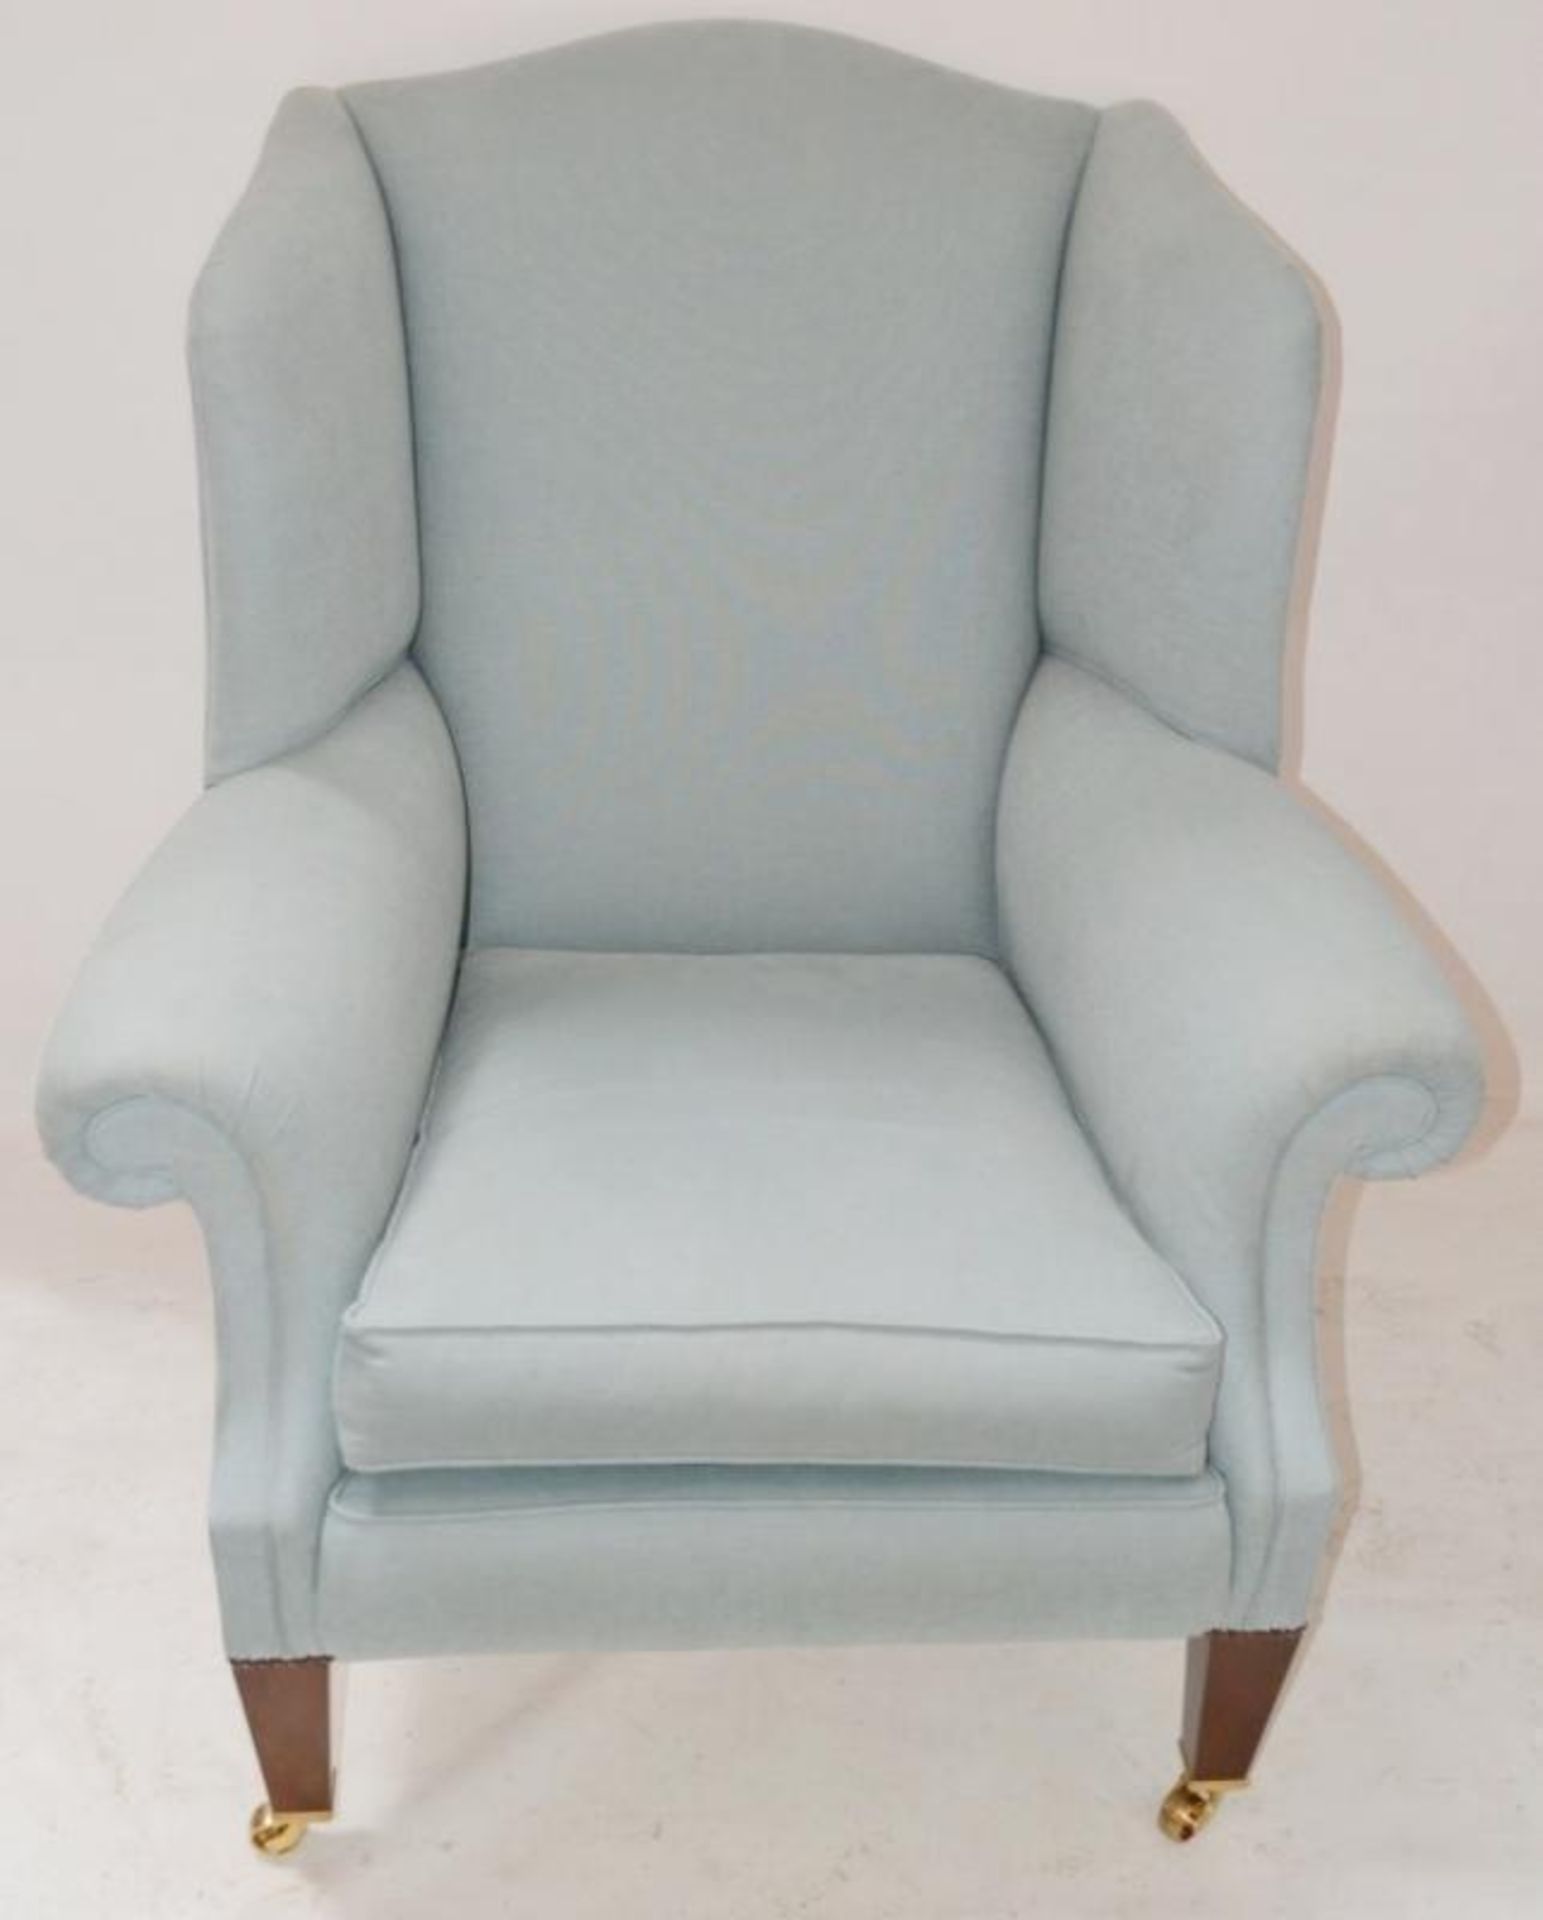 1 x Duresta "Somerset" Wing Chair Light Blue - Dimensions: 113H x 91W x 92D cms - Ref: 3143184-A NP1